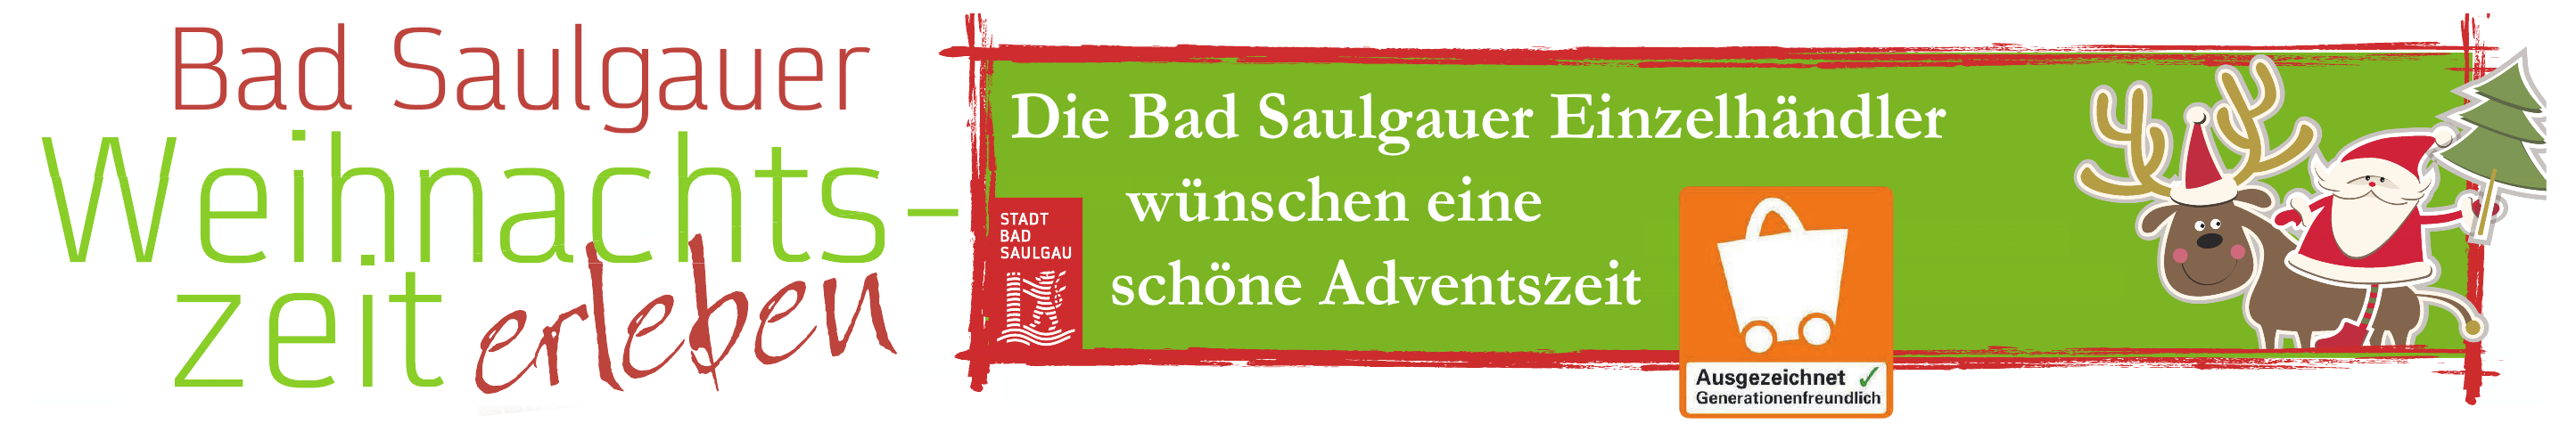 Bad Saulgau bietet zwei Gewinnspiele und ganz viel adventliches Flair Image 1